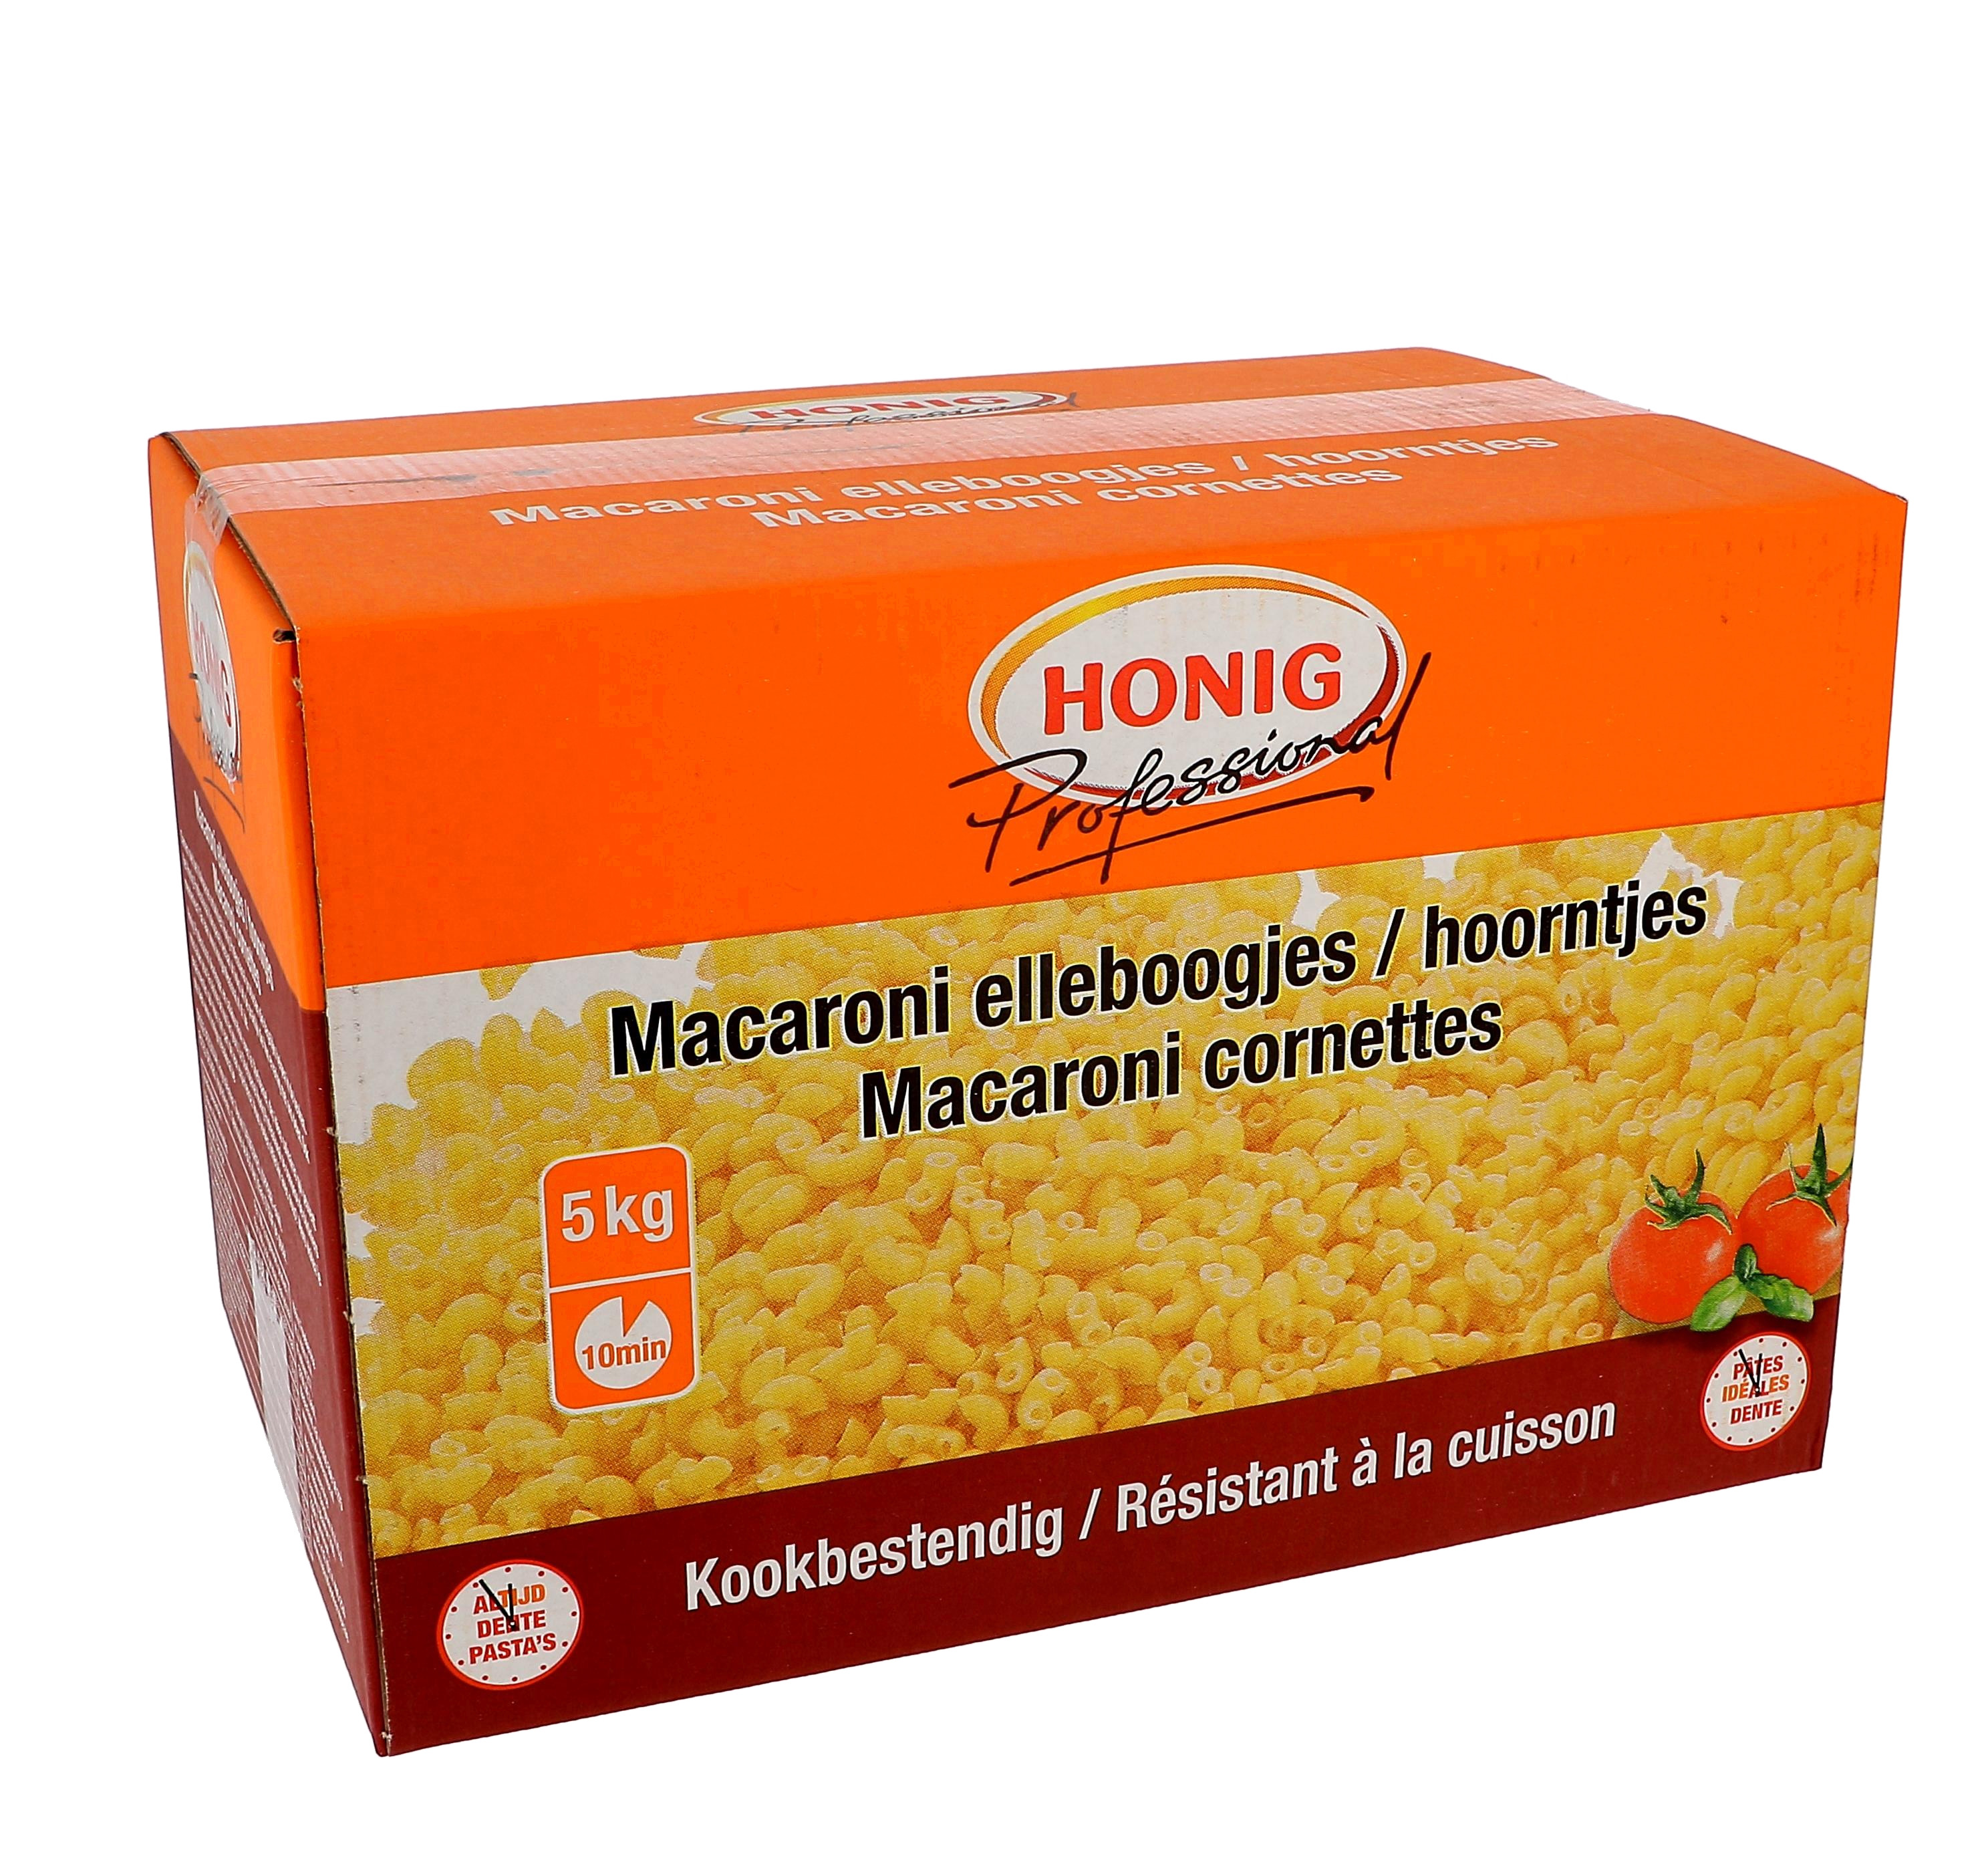 Honig pates cornettes(macaroni) 5kg resistant à la cuisson